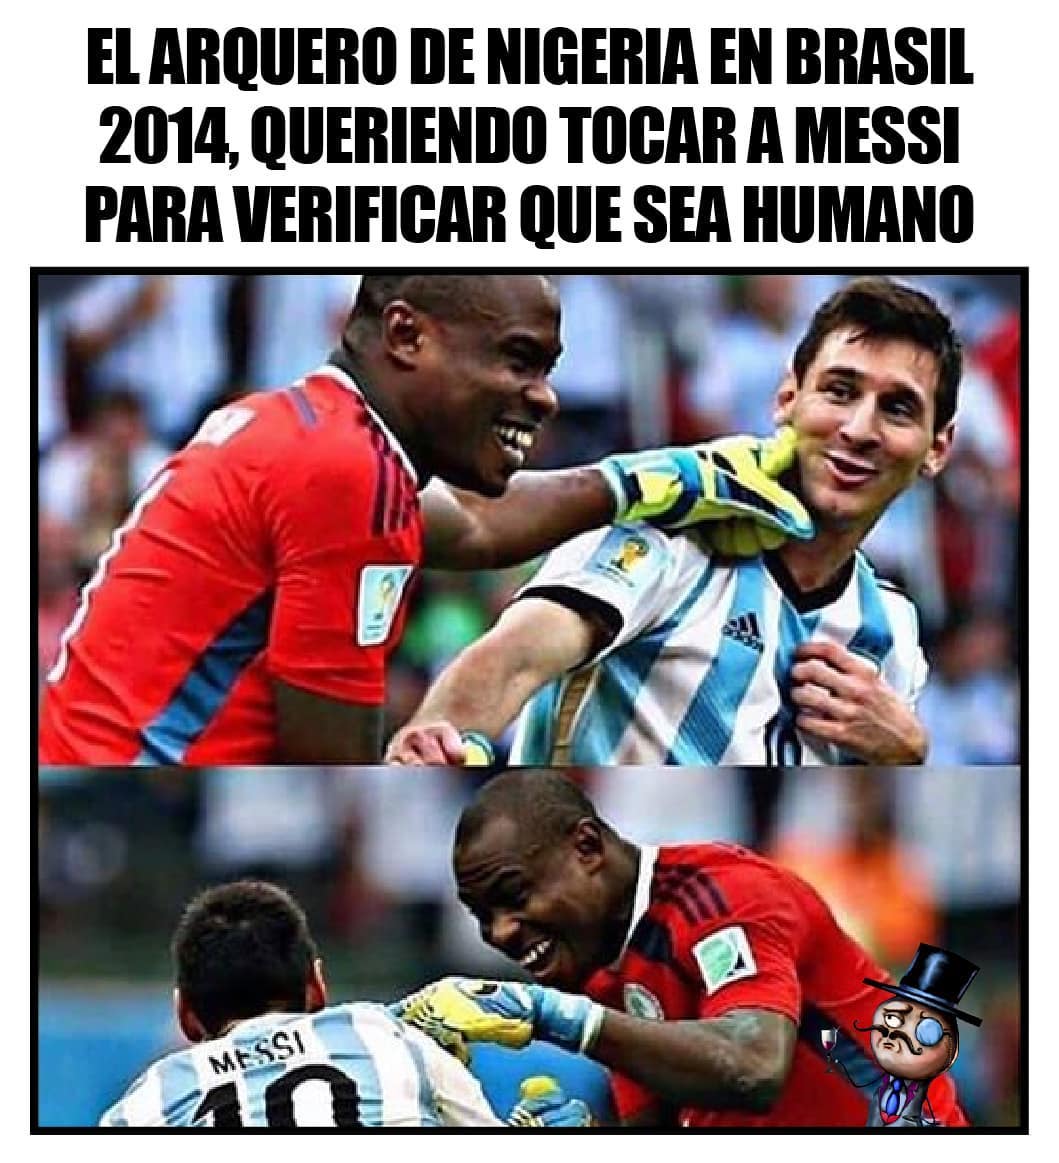 El arquero de Nigeria en Brasil 2014 queriendo tocar a Messi para verificar que sea humano.